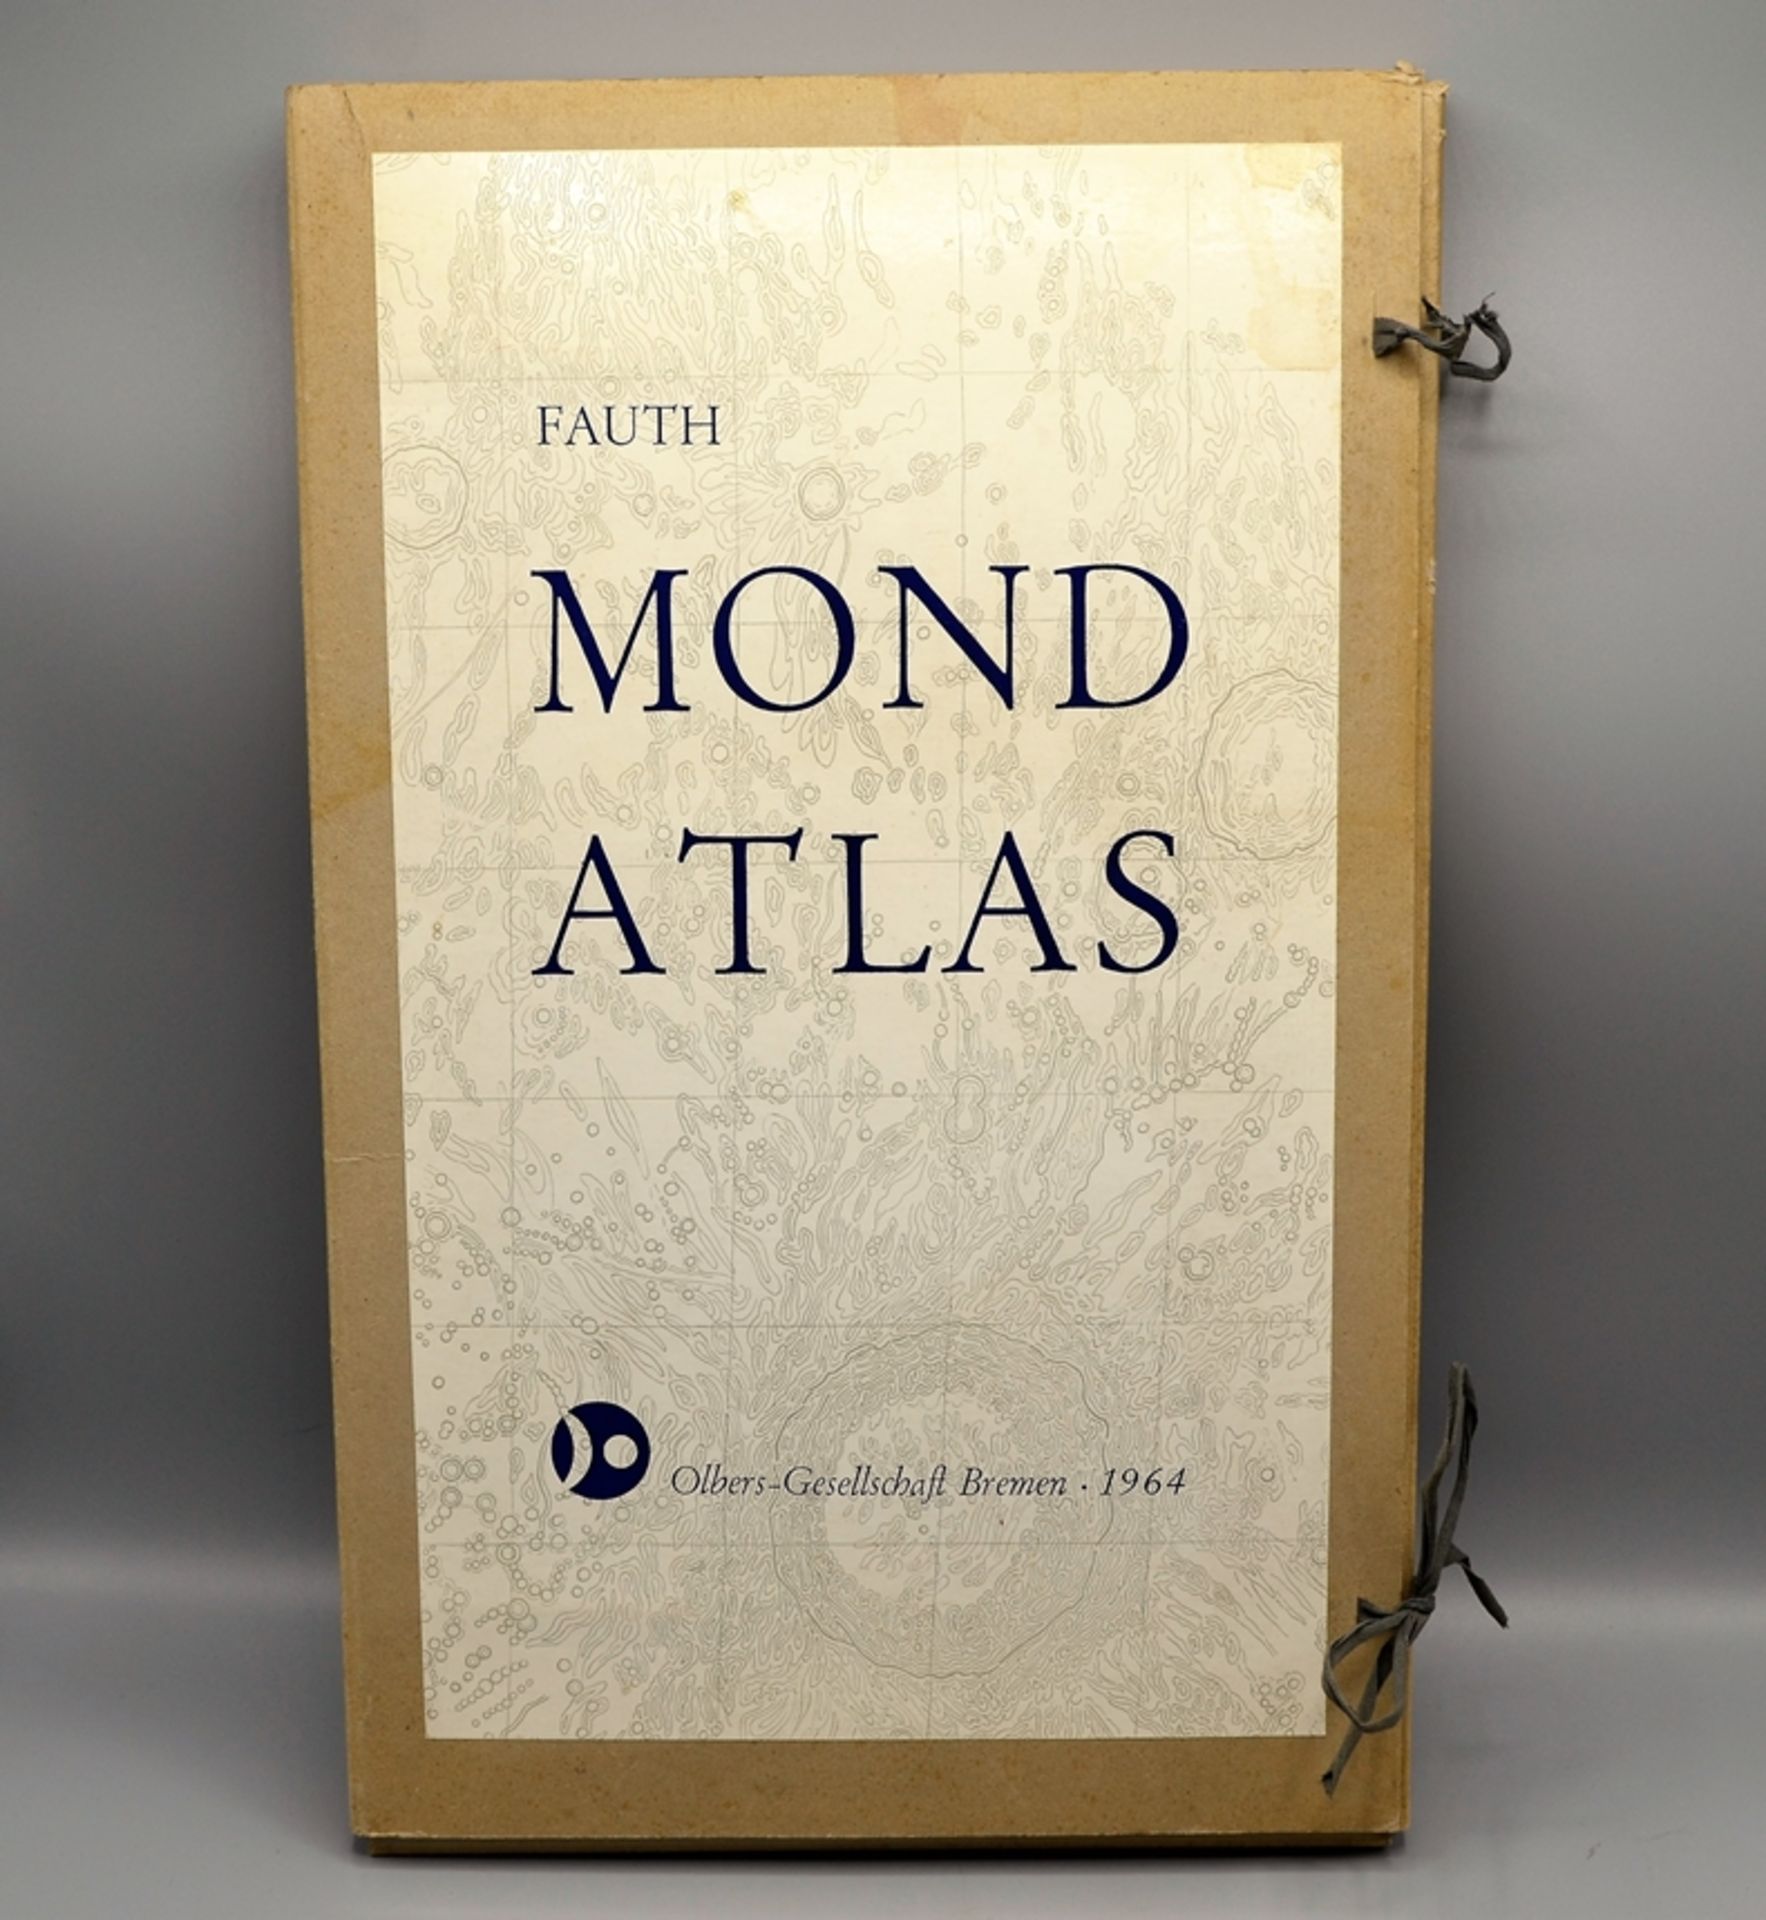 Fauth Mond Atlas Olbers Gesellschaft Bremen 1964, nicht auf Vollständigkeit geprüft